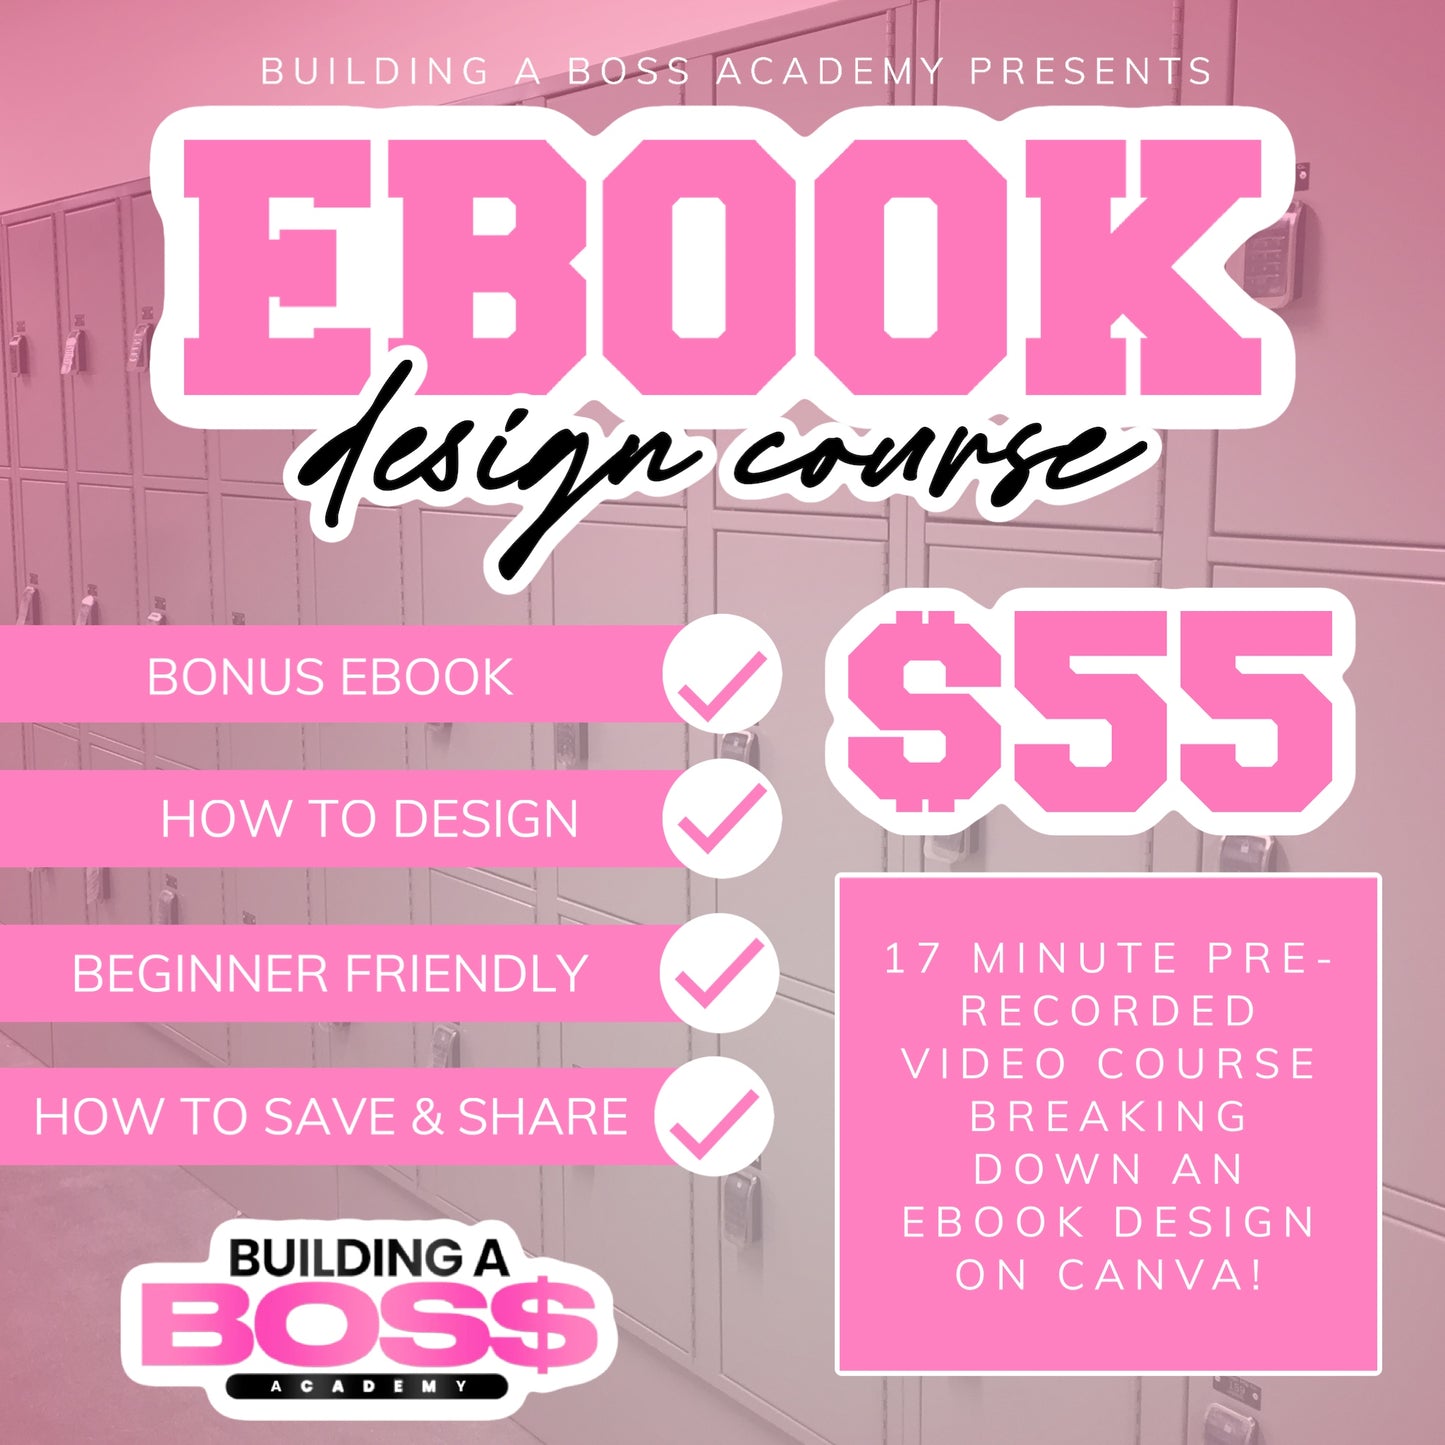 Ebook Design Course